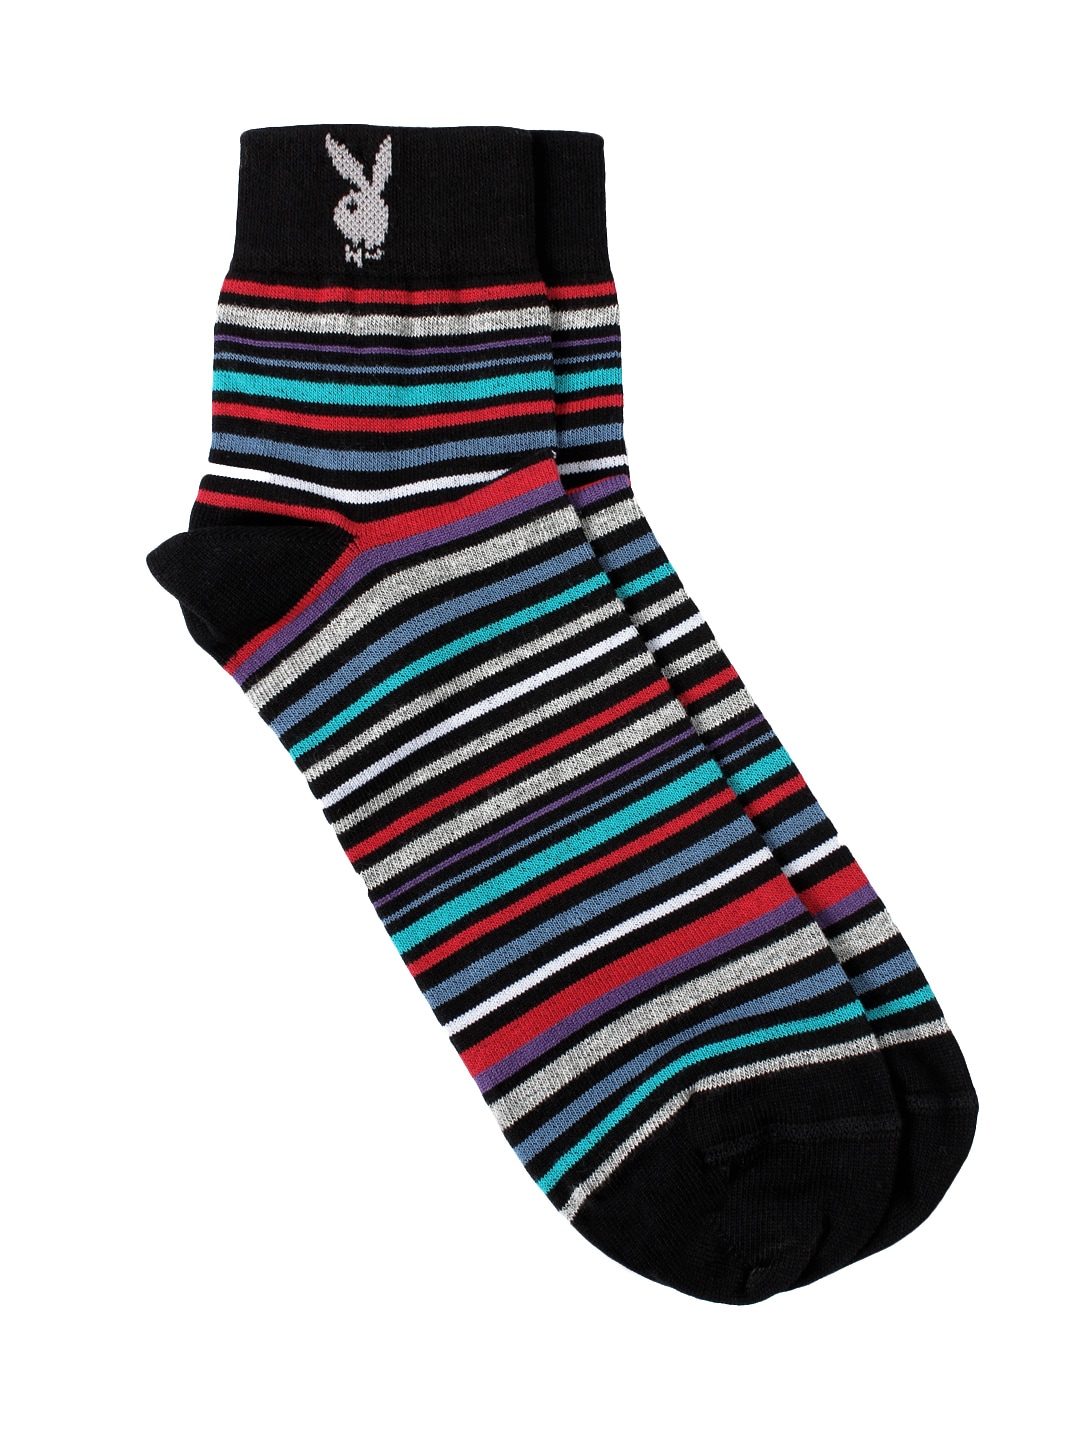 Playboy Men Multi Coloured Socks